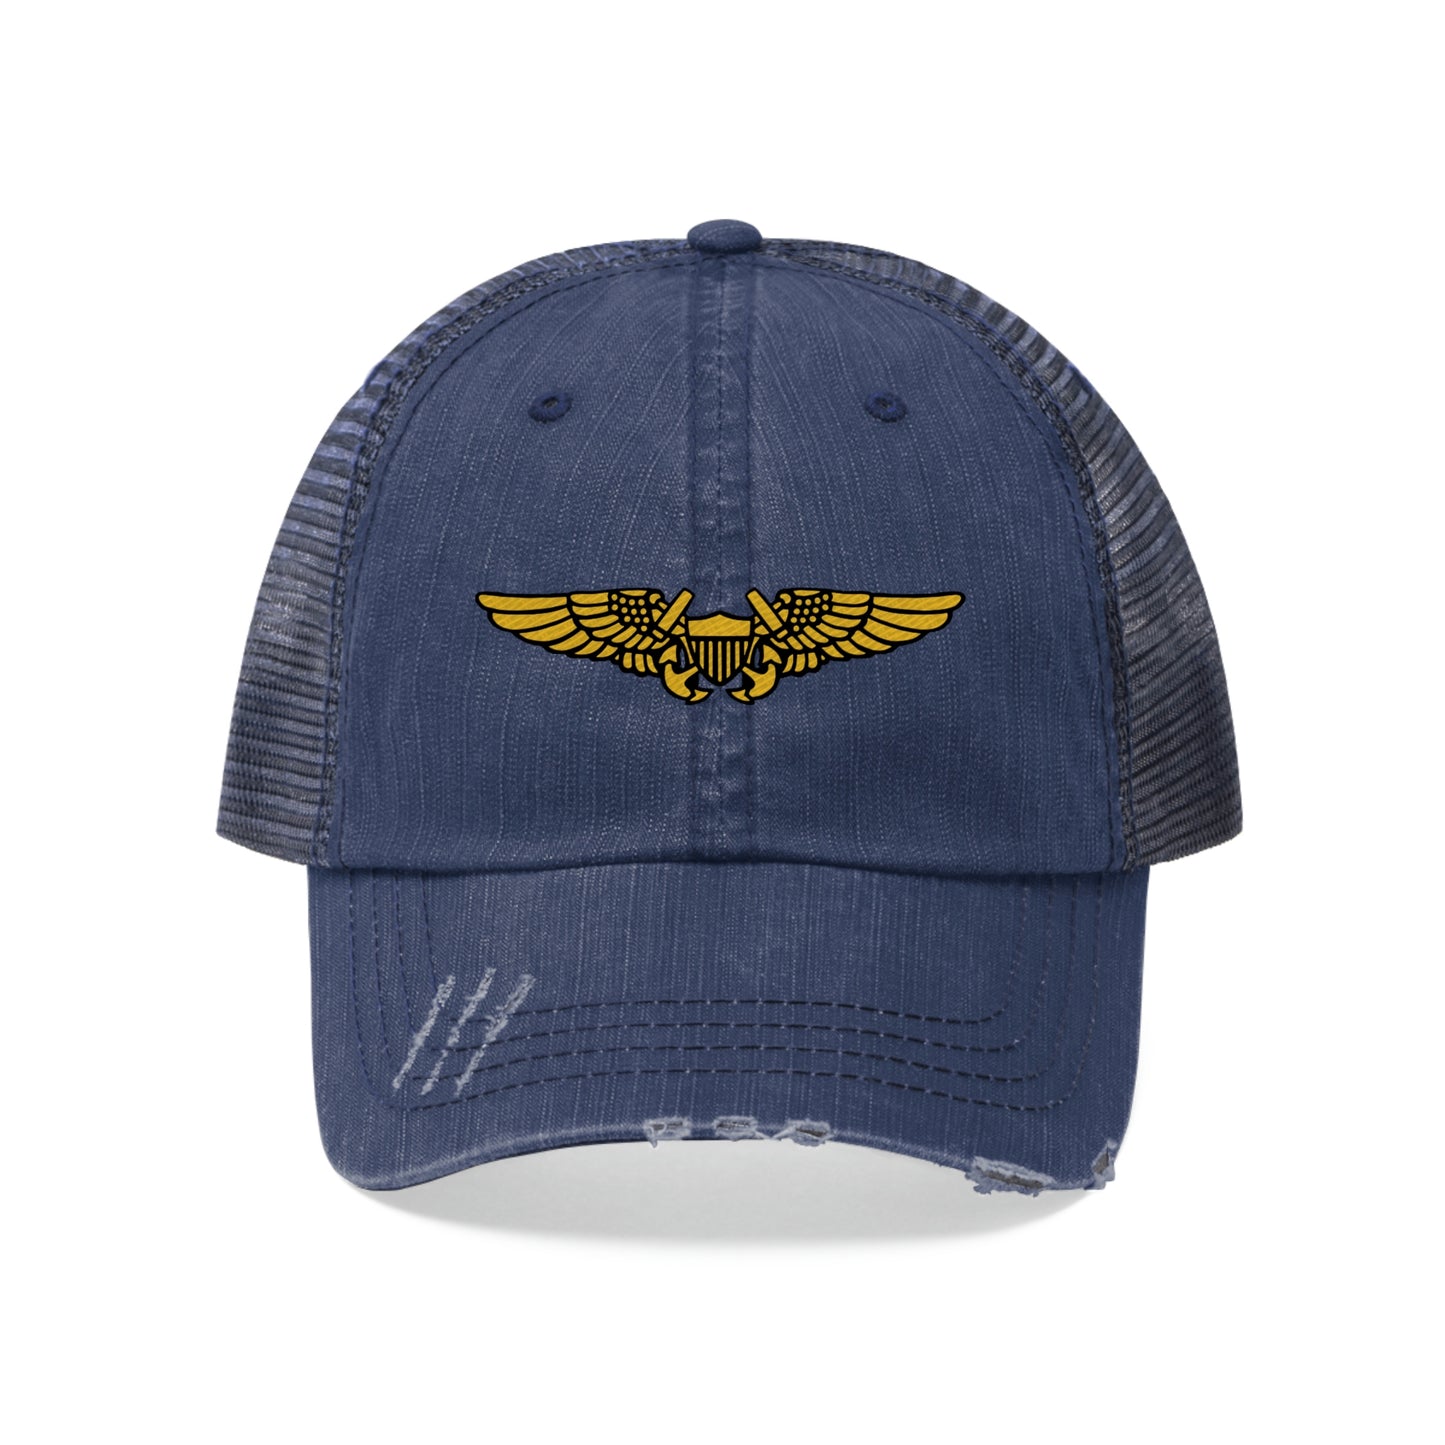 Naval Flight Officer Trucker Hat